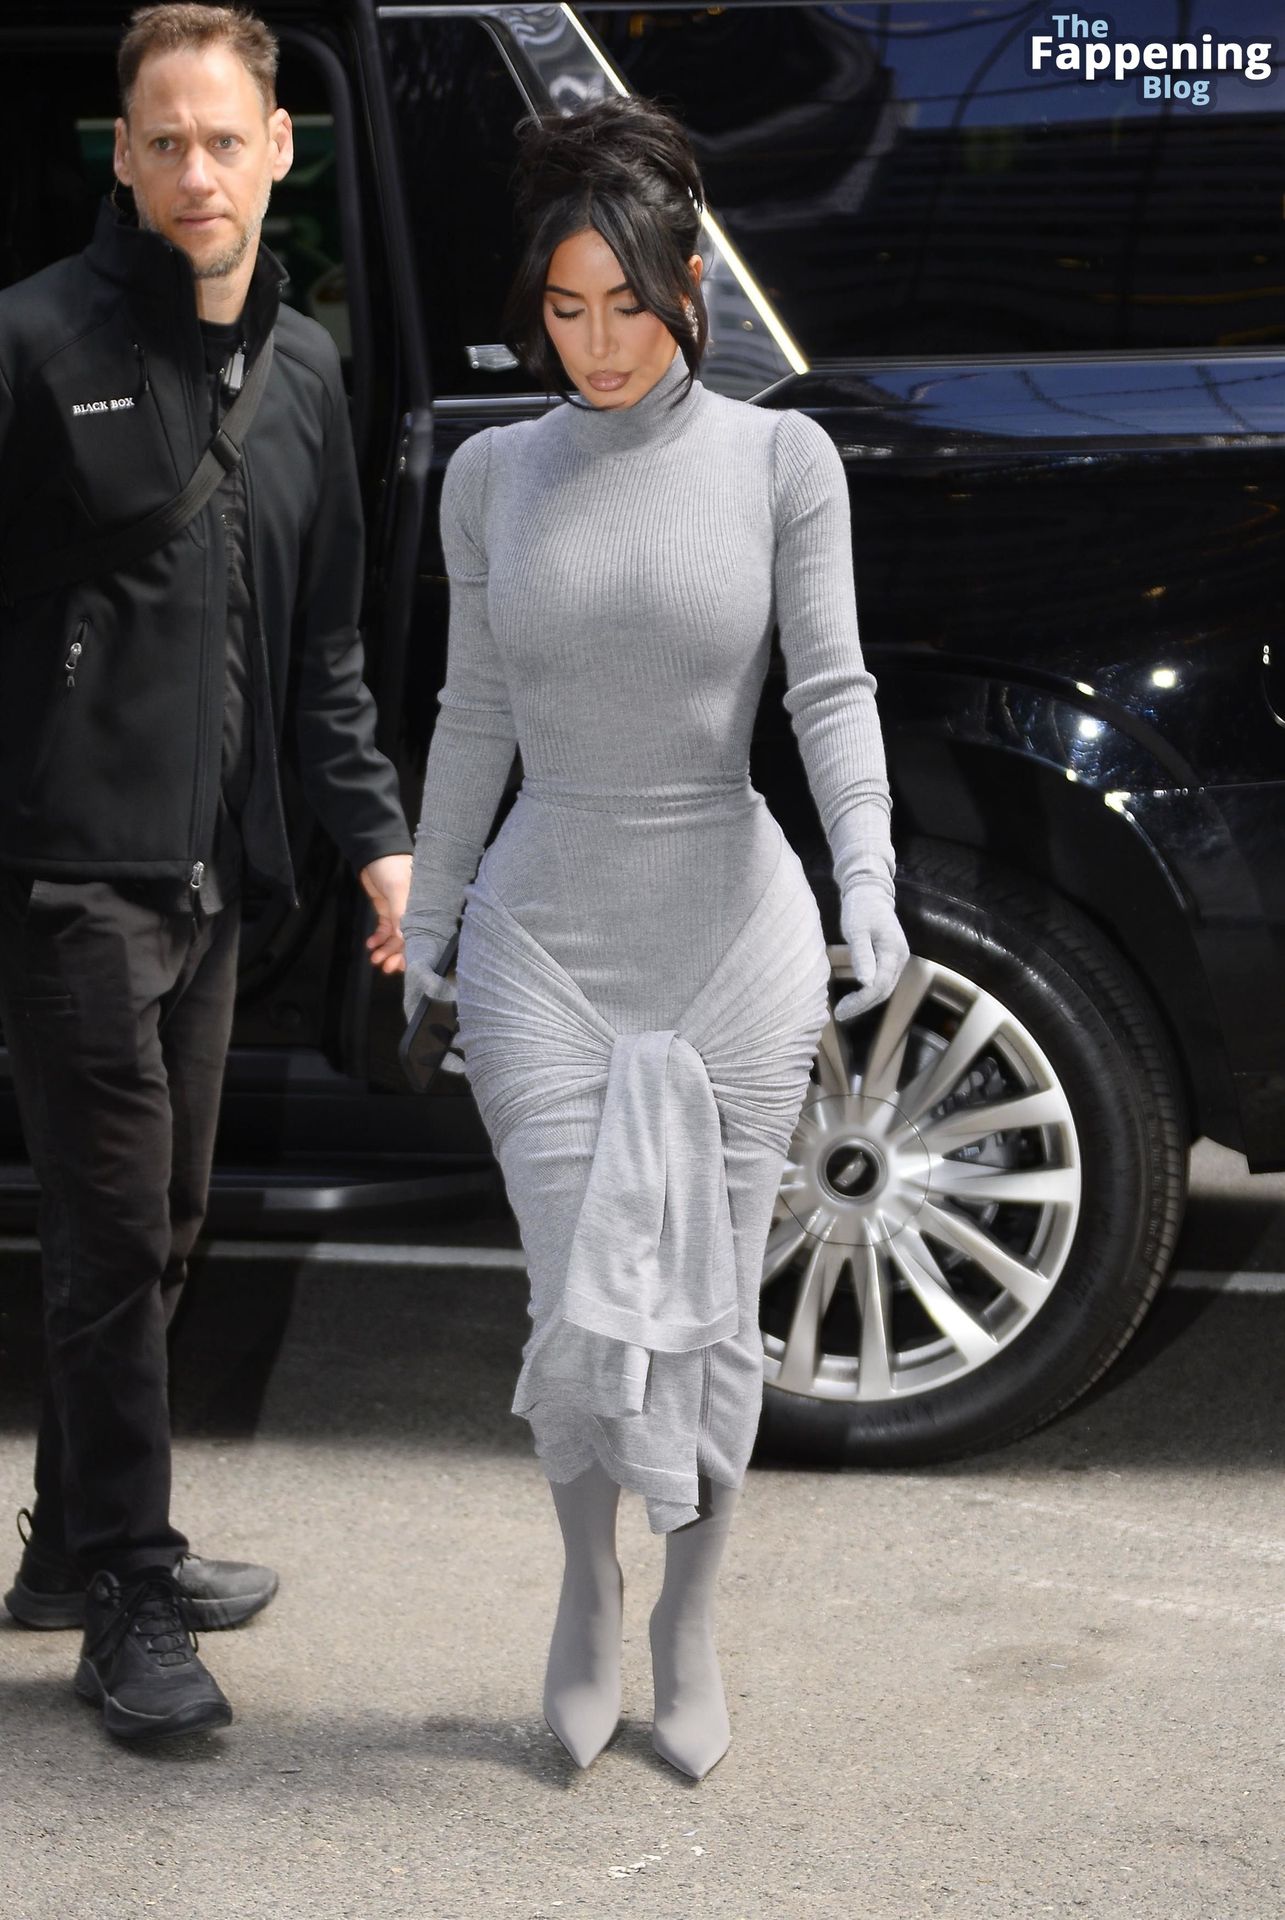 Kim-Kardashian-Sexy-The-Fappening-Blog-11-1.jpg